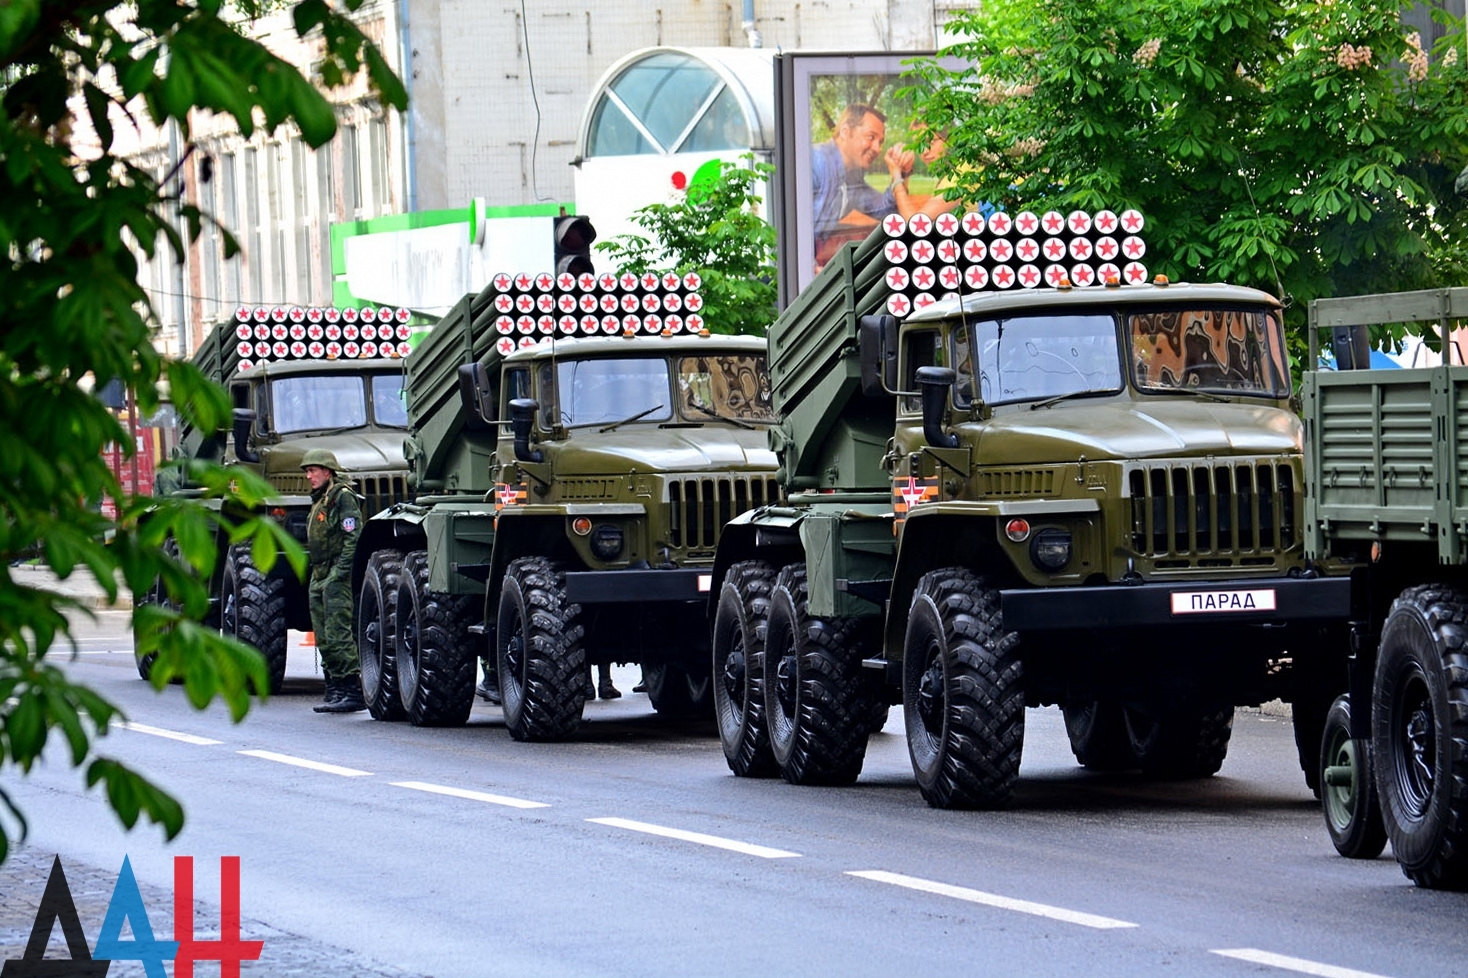 Натовп, танки і "Гради", Моторола в орденах: Окупований Донецьк відзначає 9 травня (ФОТО) - фото 4